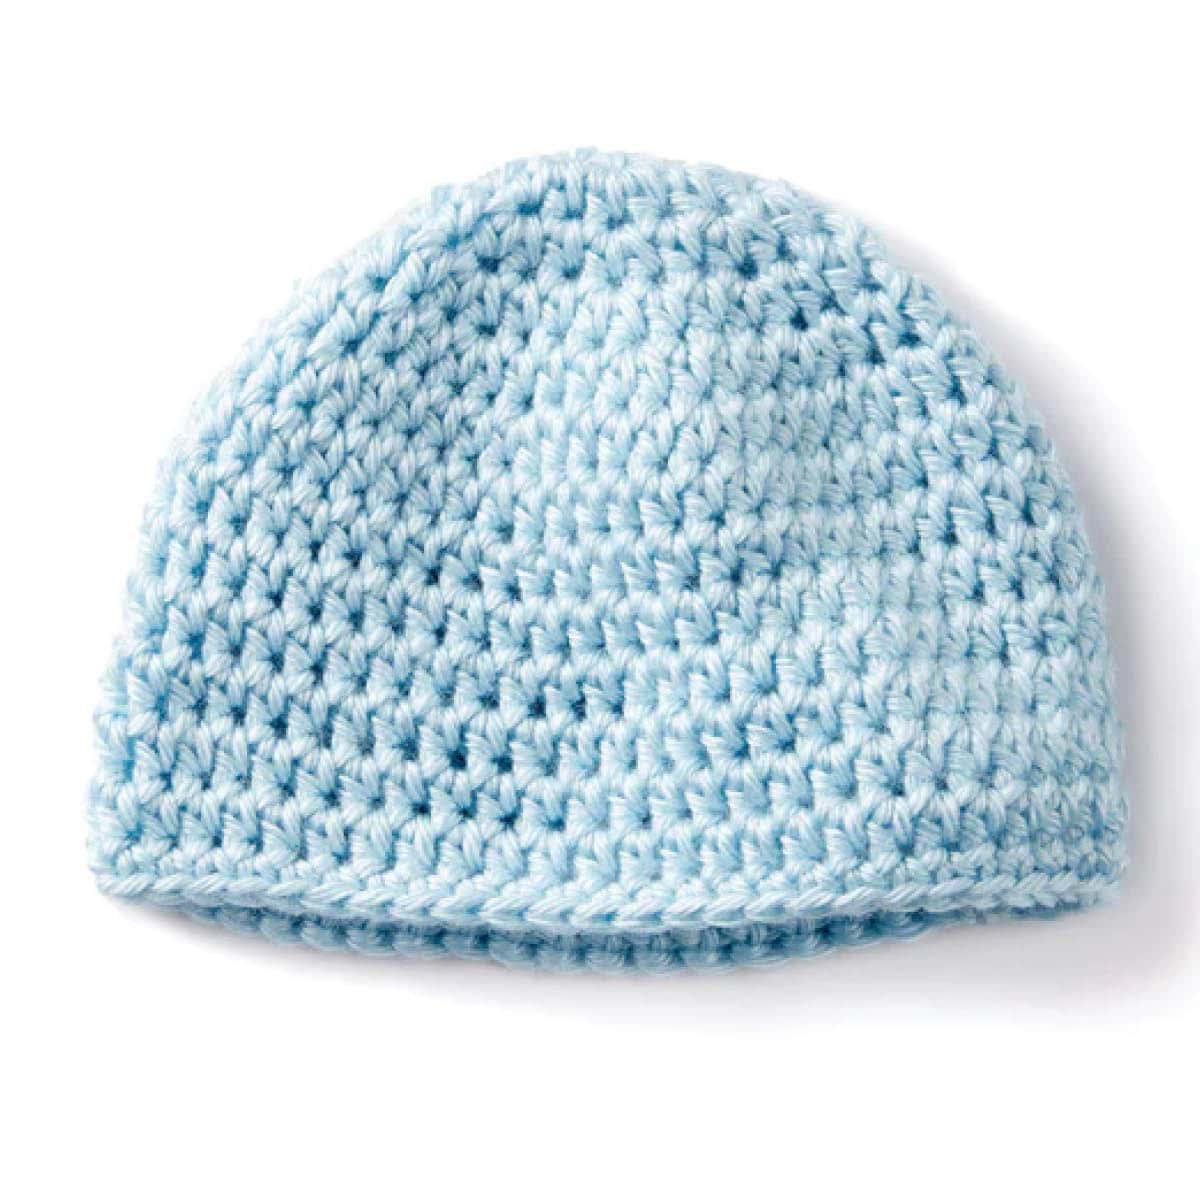 Crochet Teeny Weeny Baby Cap Pattern